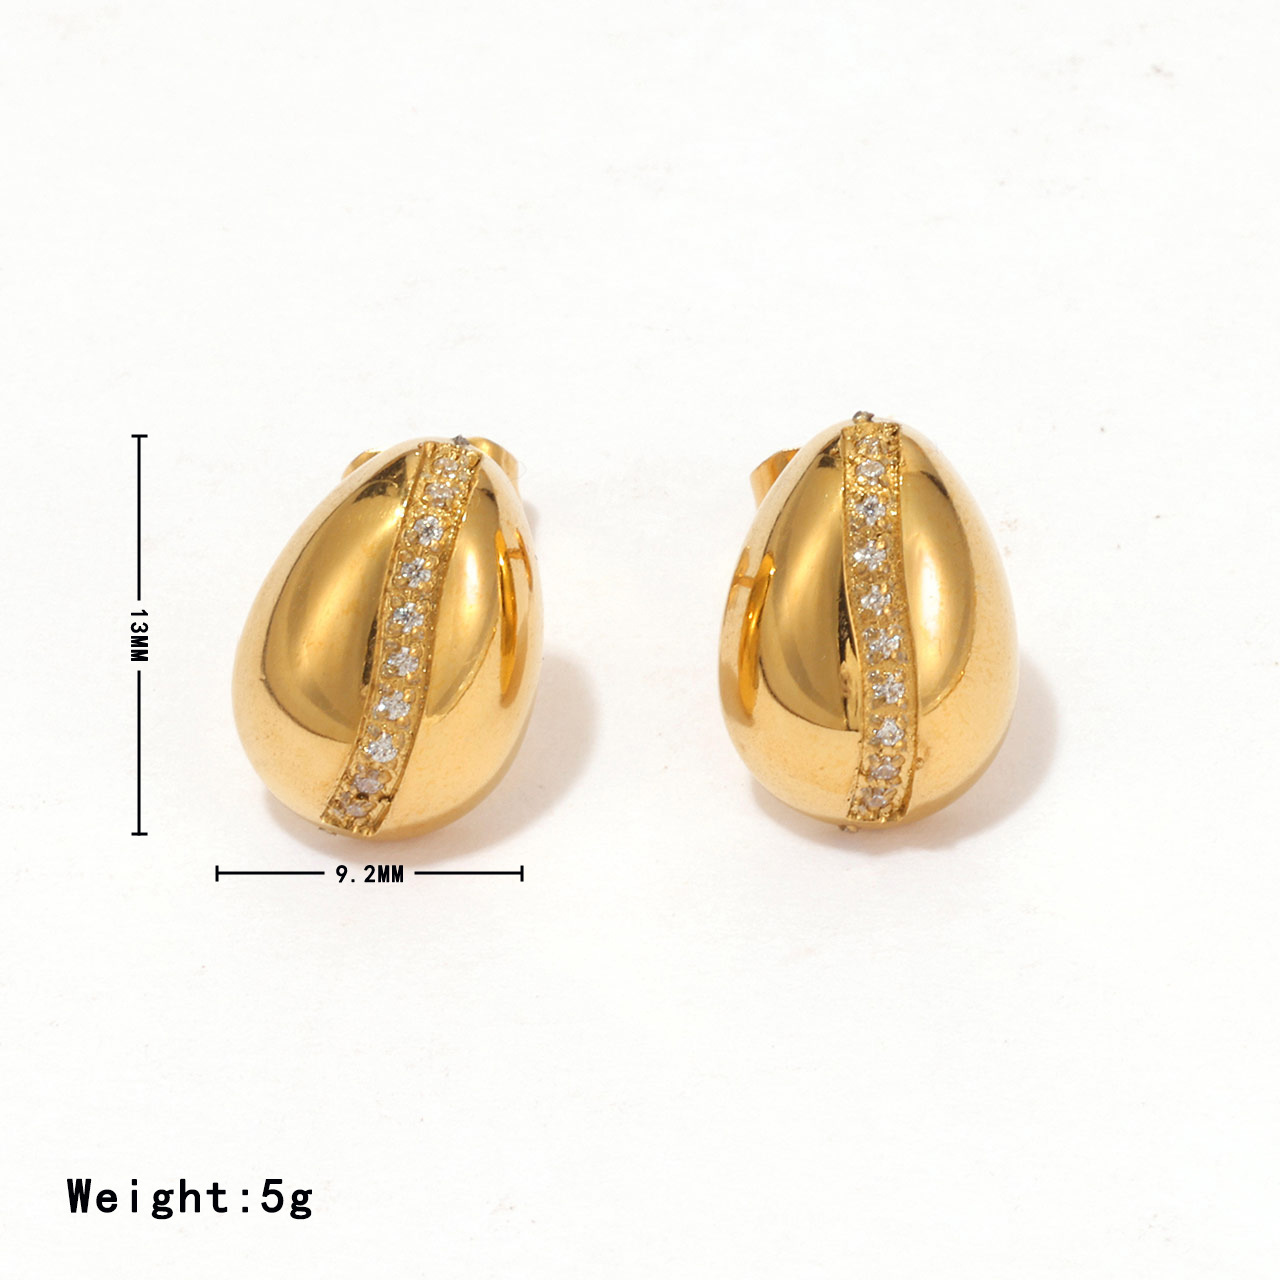 1:Gold - Stud earrings